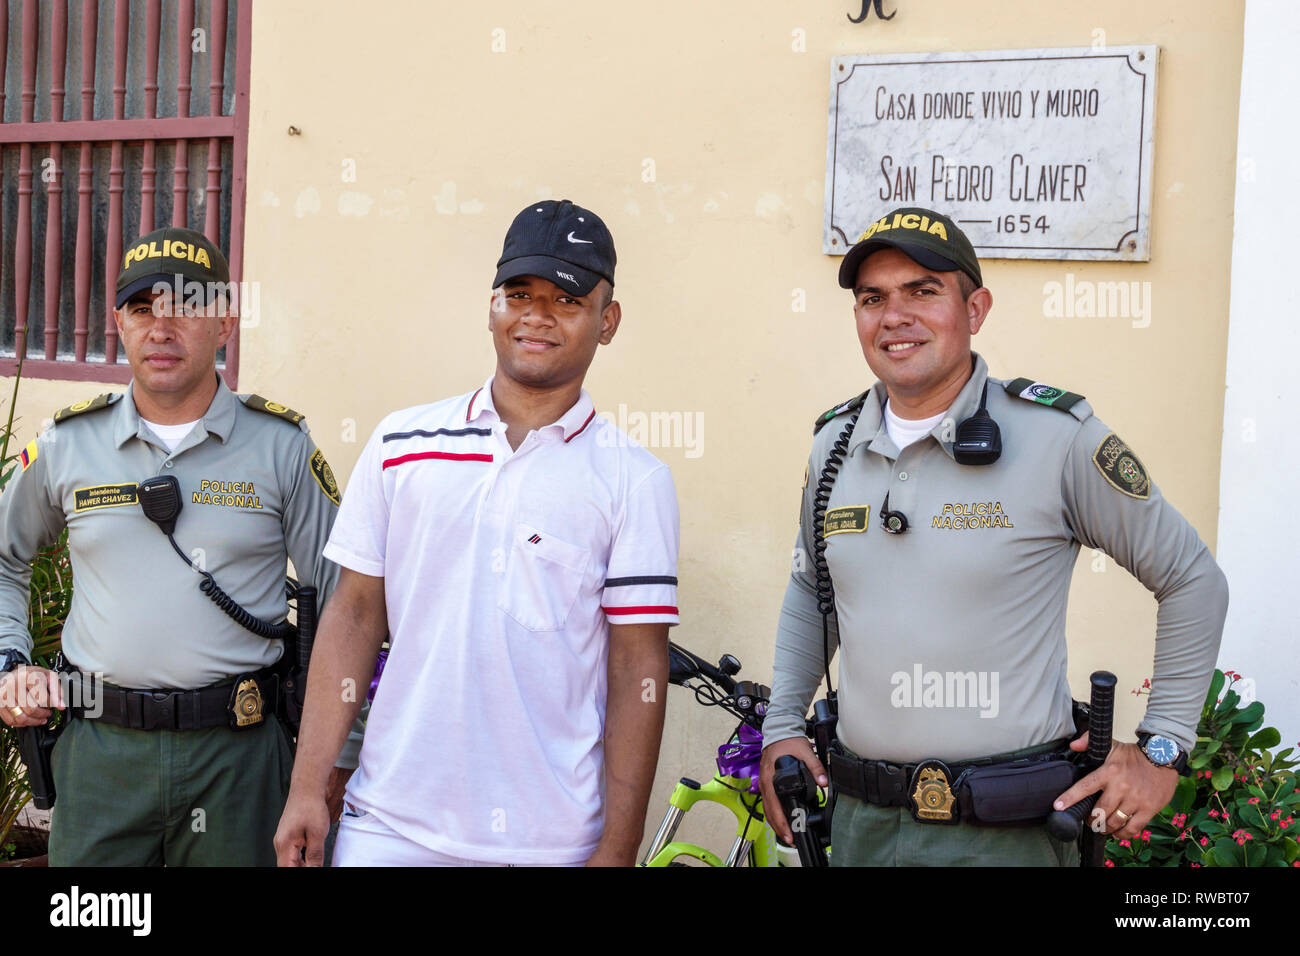 Cartagena Kolumbien, Plaza San Pedro Claver, Einwohner von Hispanic, Nationalpolizei, polizei, Offizier, Uniform, COL190119132 Stockfoto